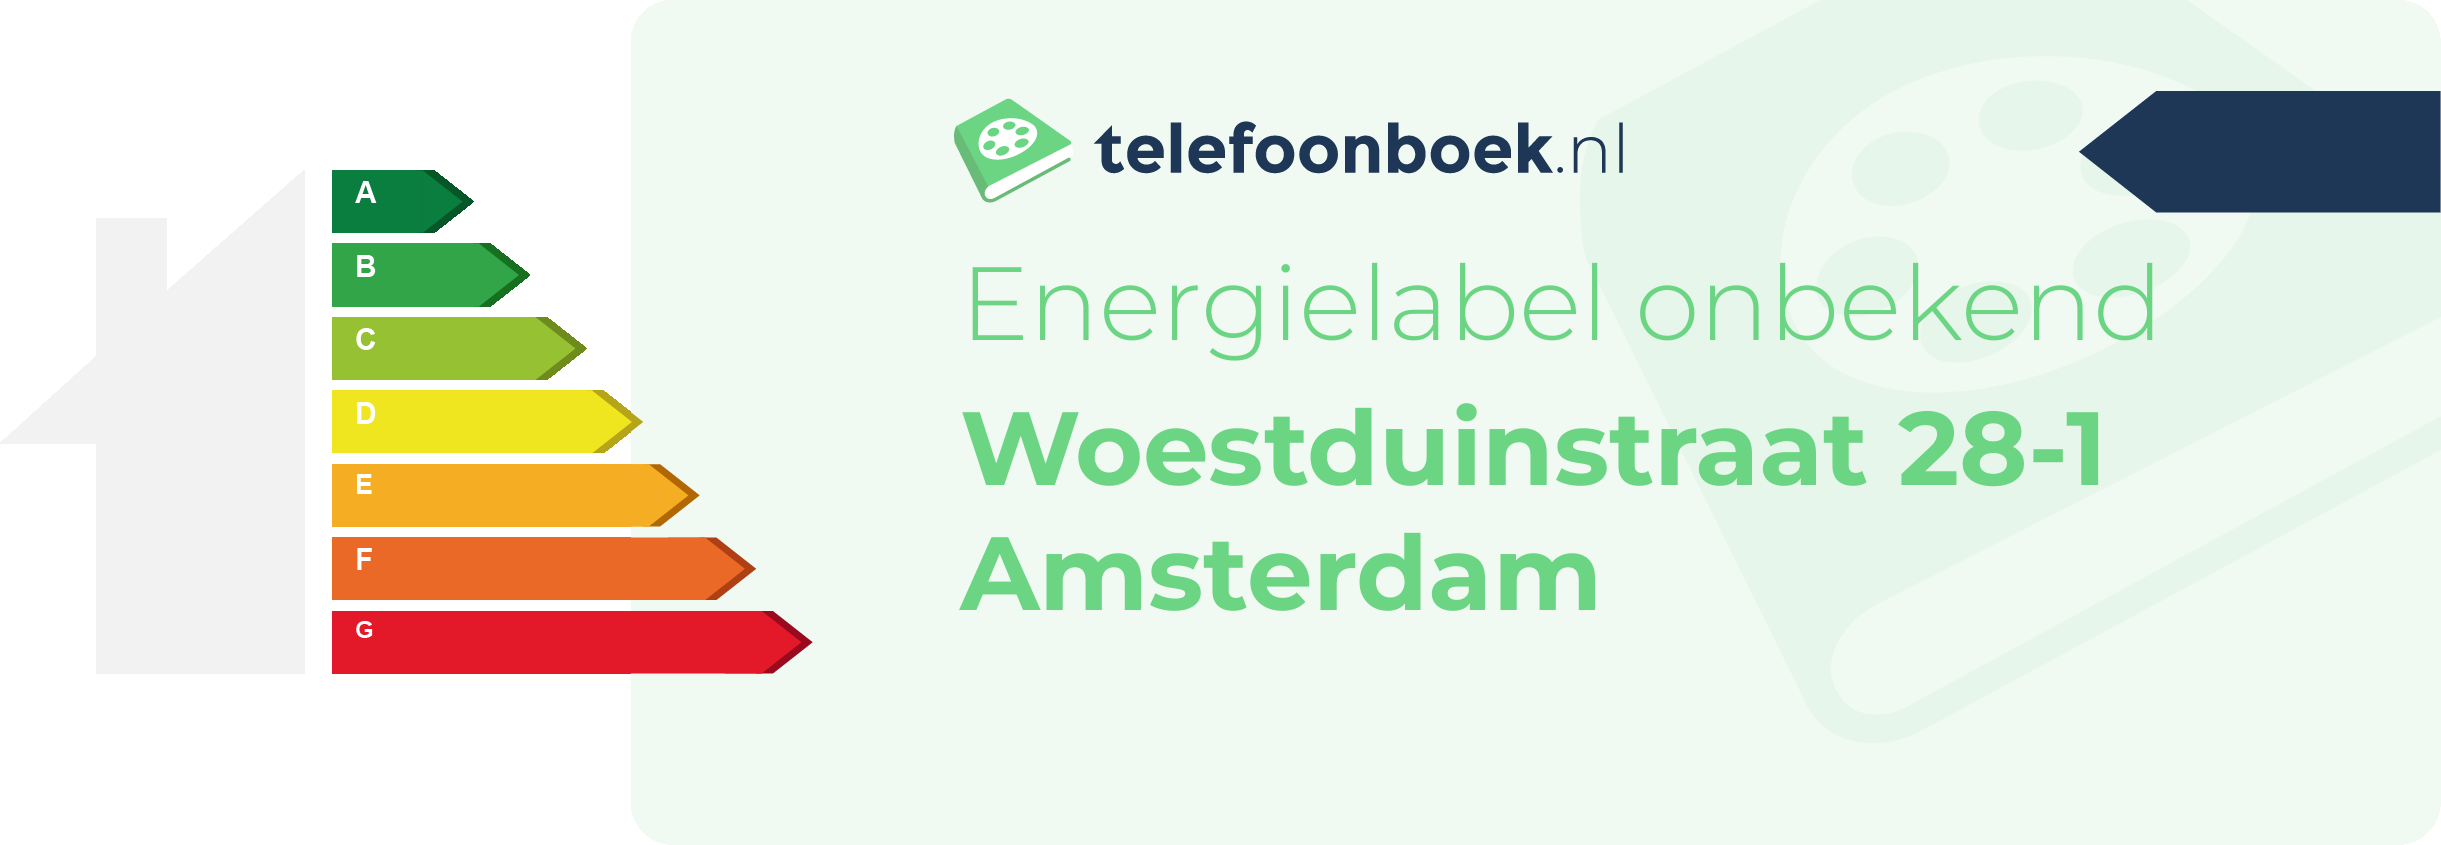 Energielabel Woestduinstraat 28-1 Amsterdam